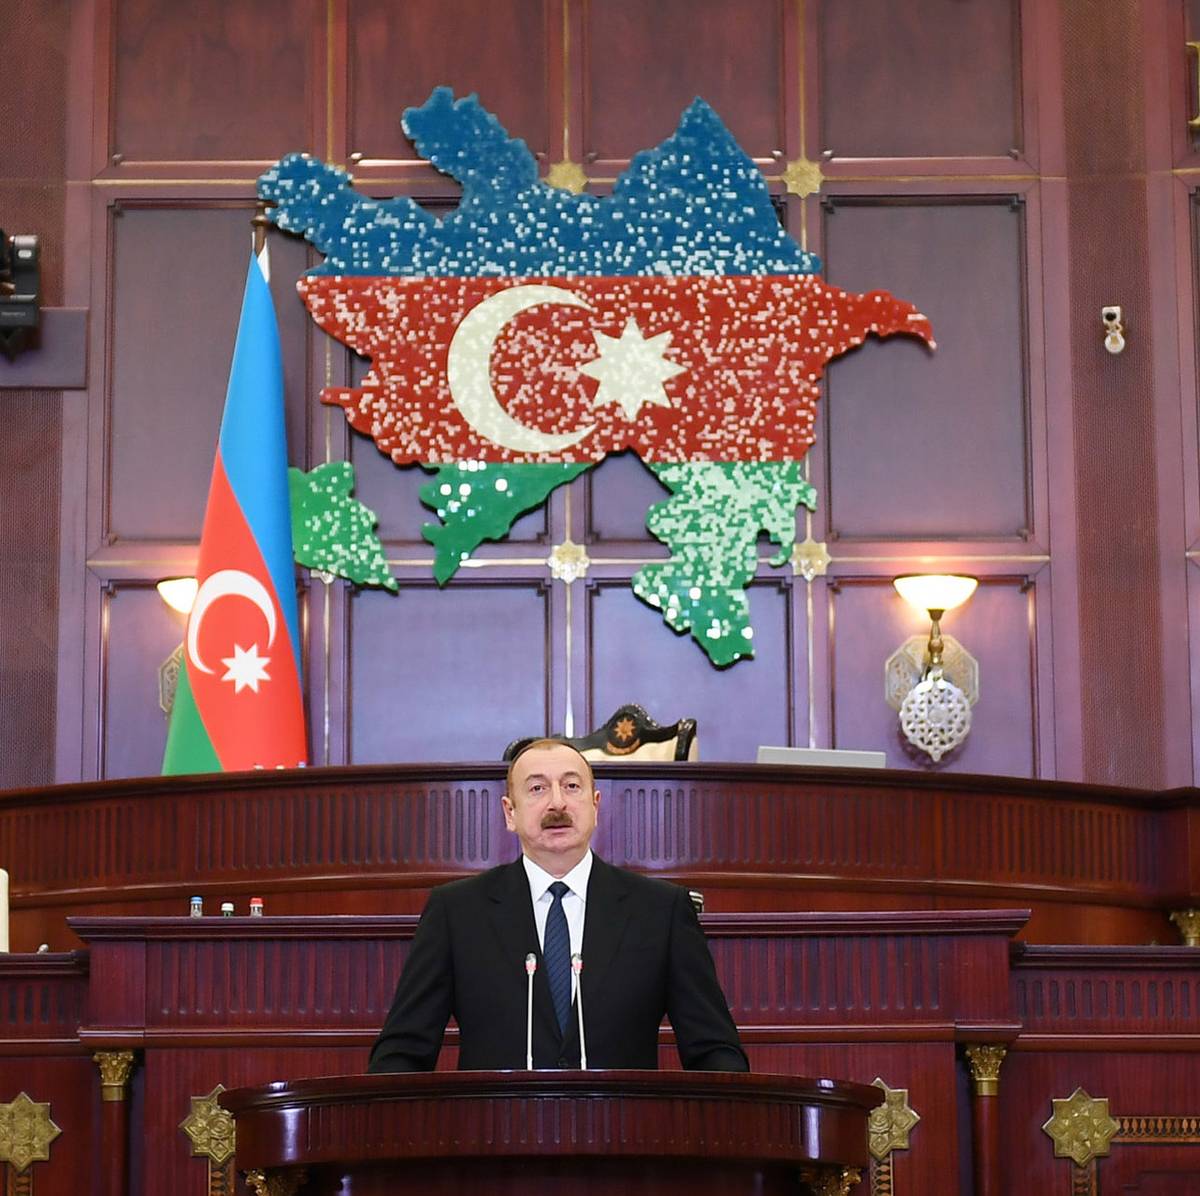 Алиев критикует Пашиняна, но диктатура и коррупция – суть его режима